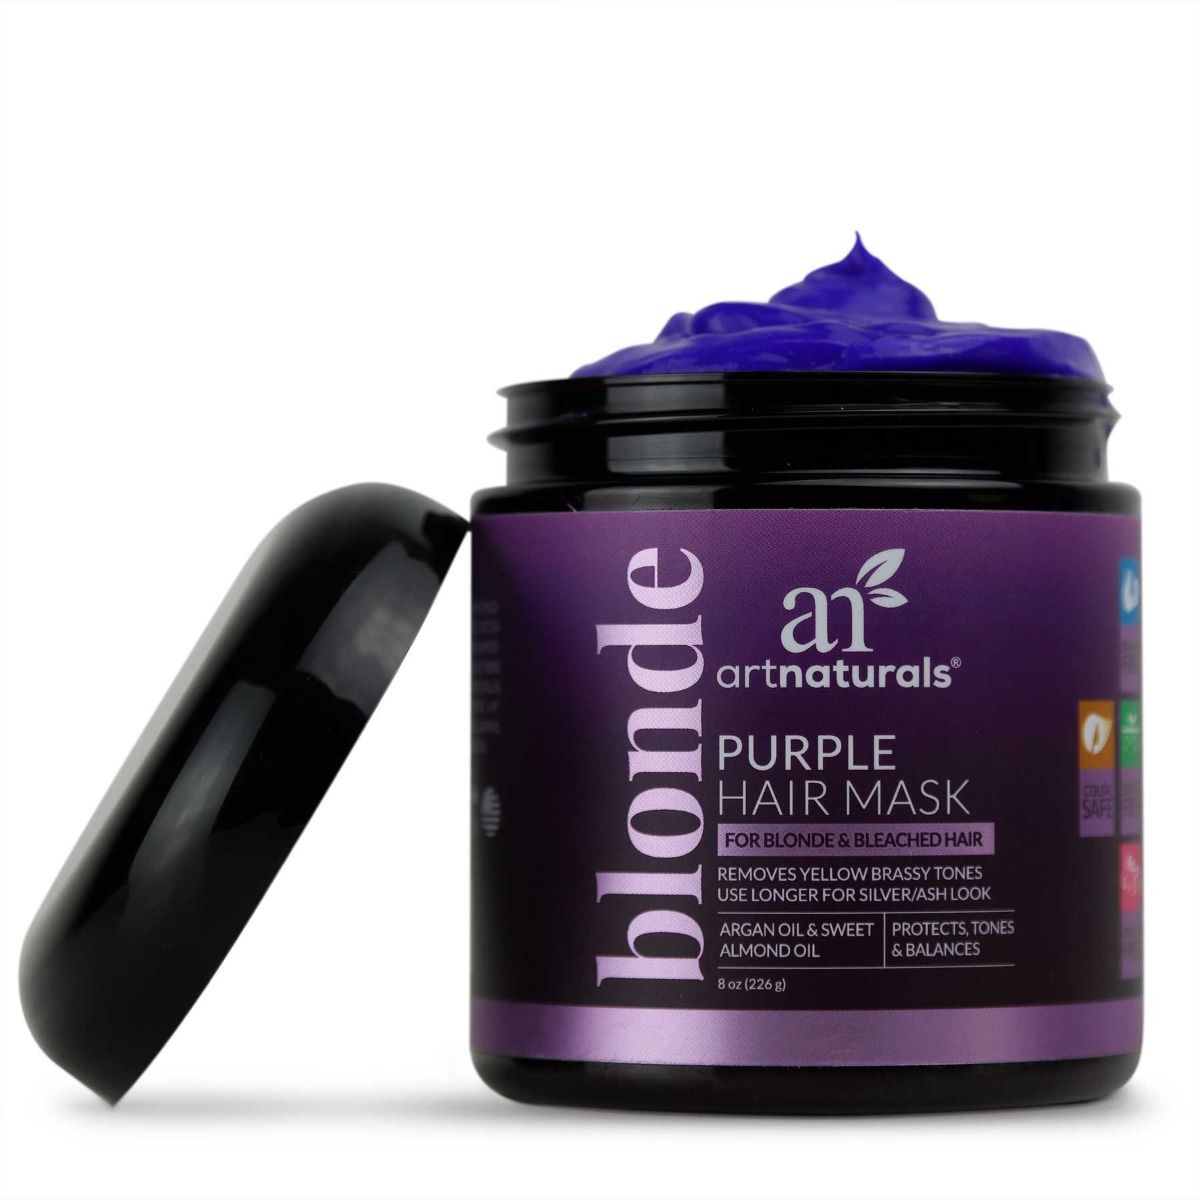 Artnaturals Purple Hair Mask